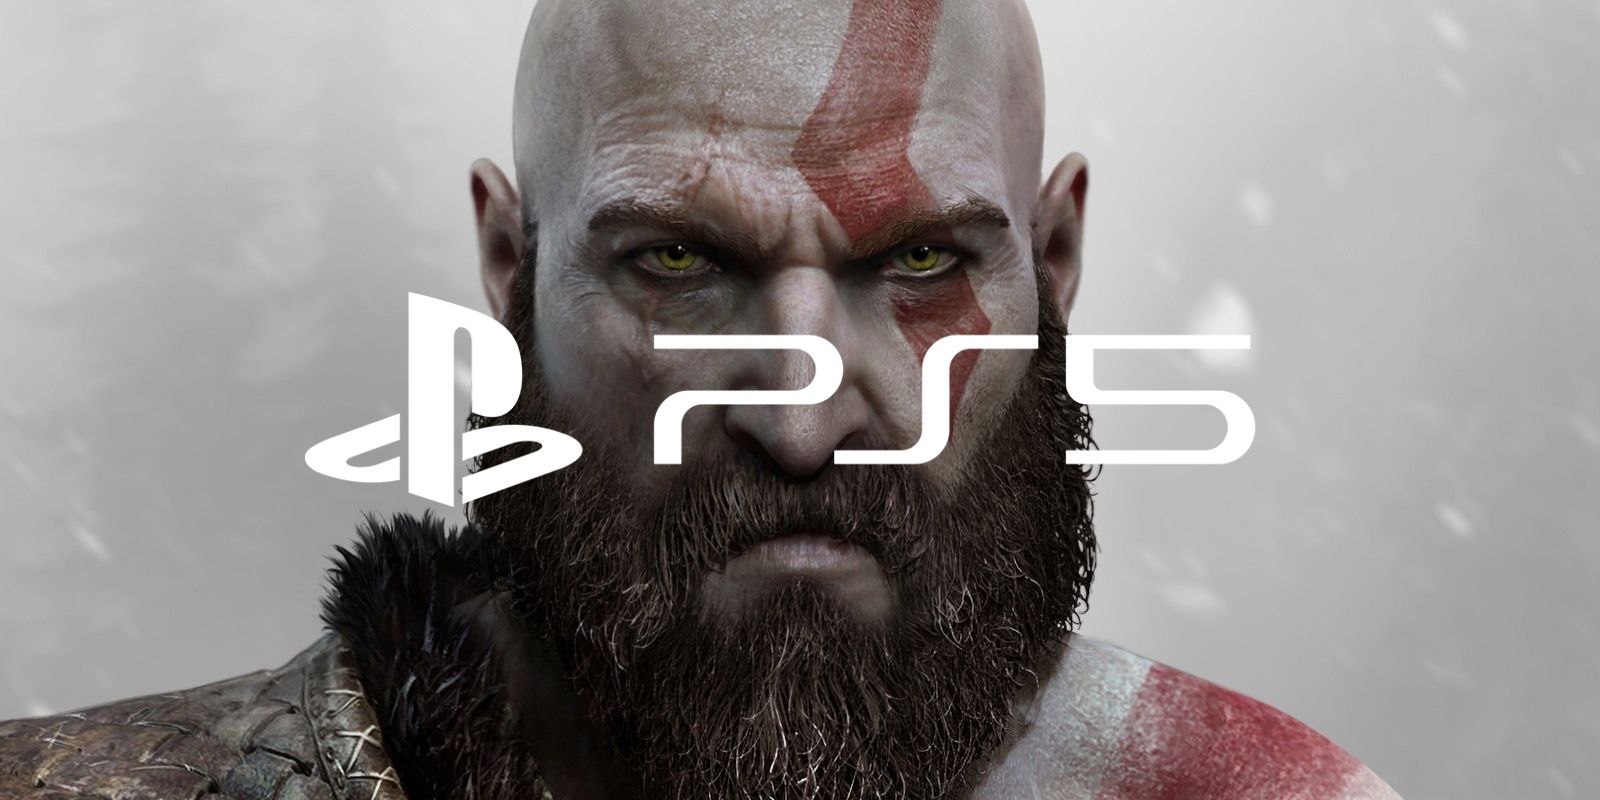 Todos los juegos de God of War se podrán jugar en PS5 en 2022 (y cuando)